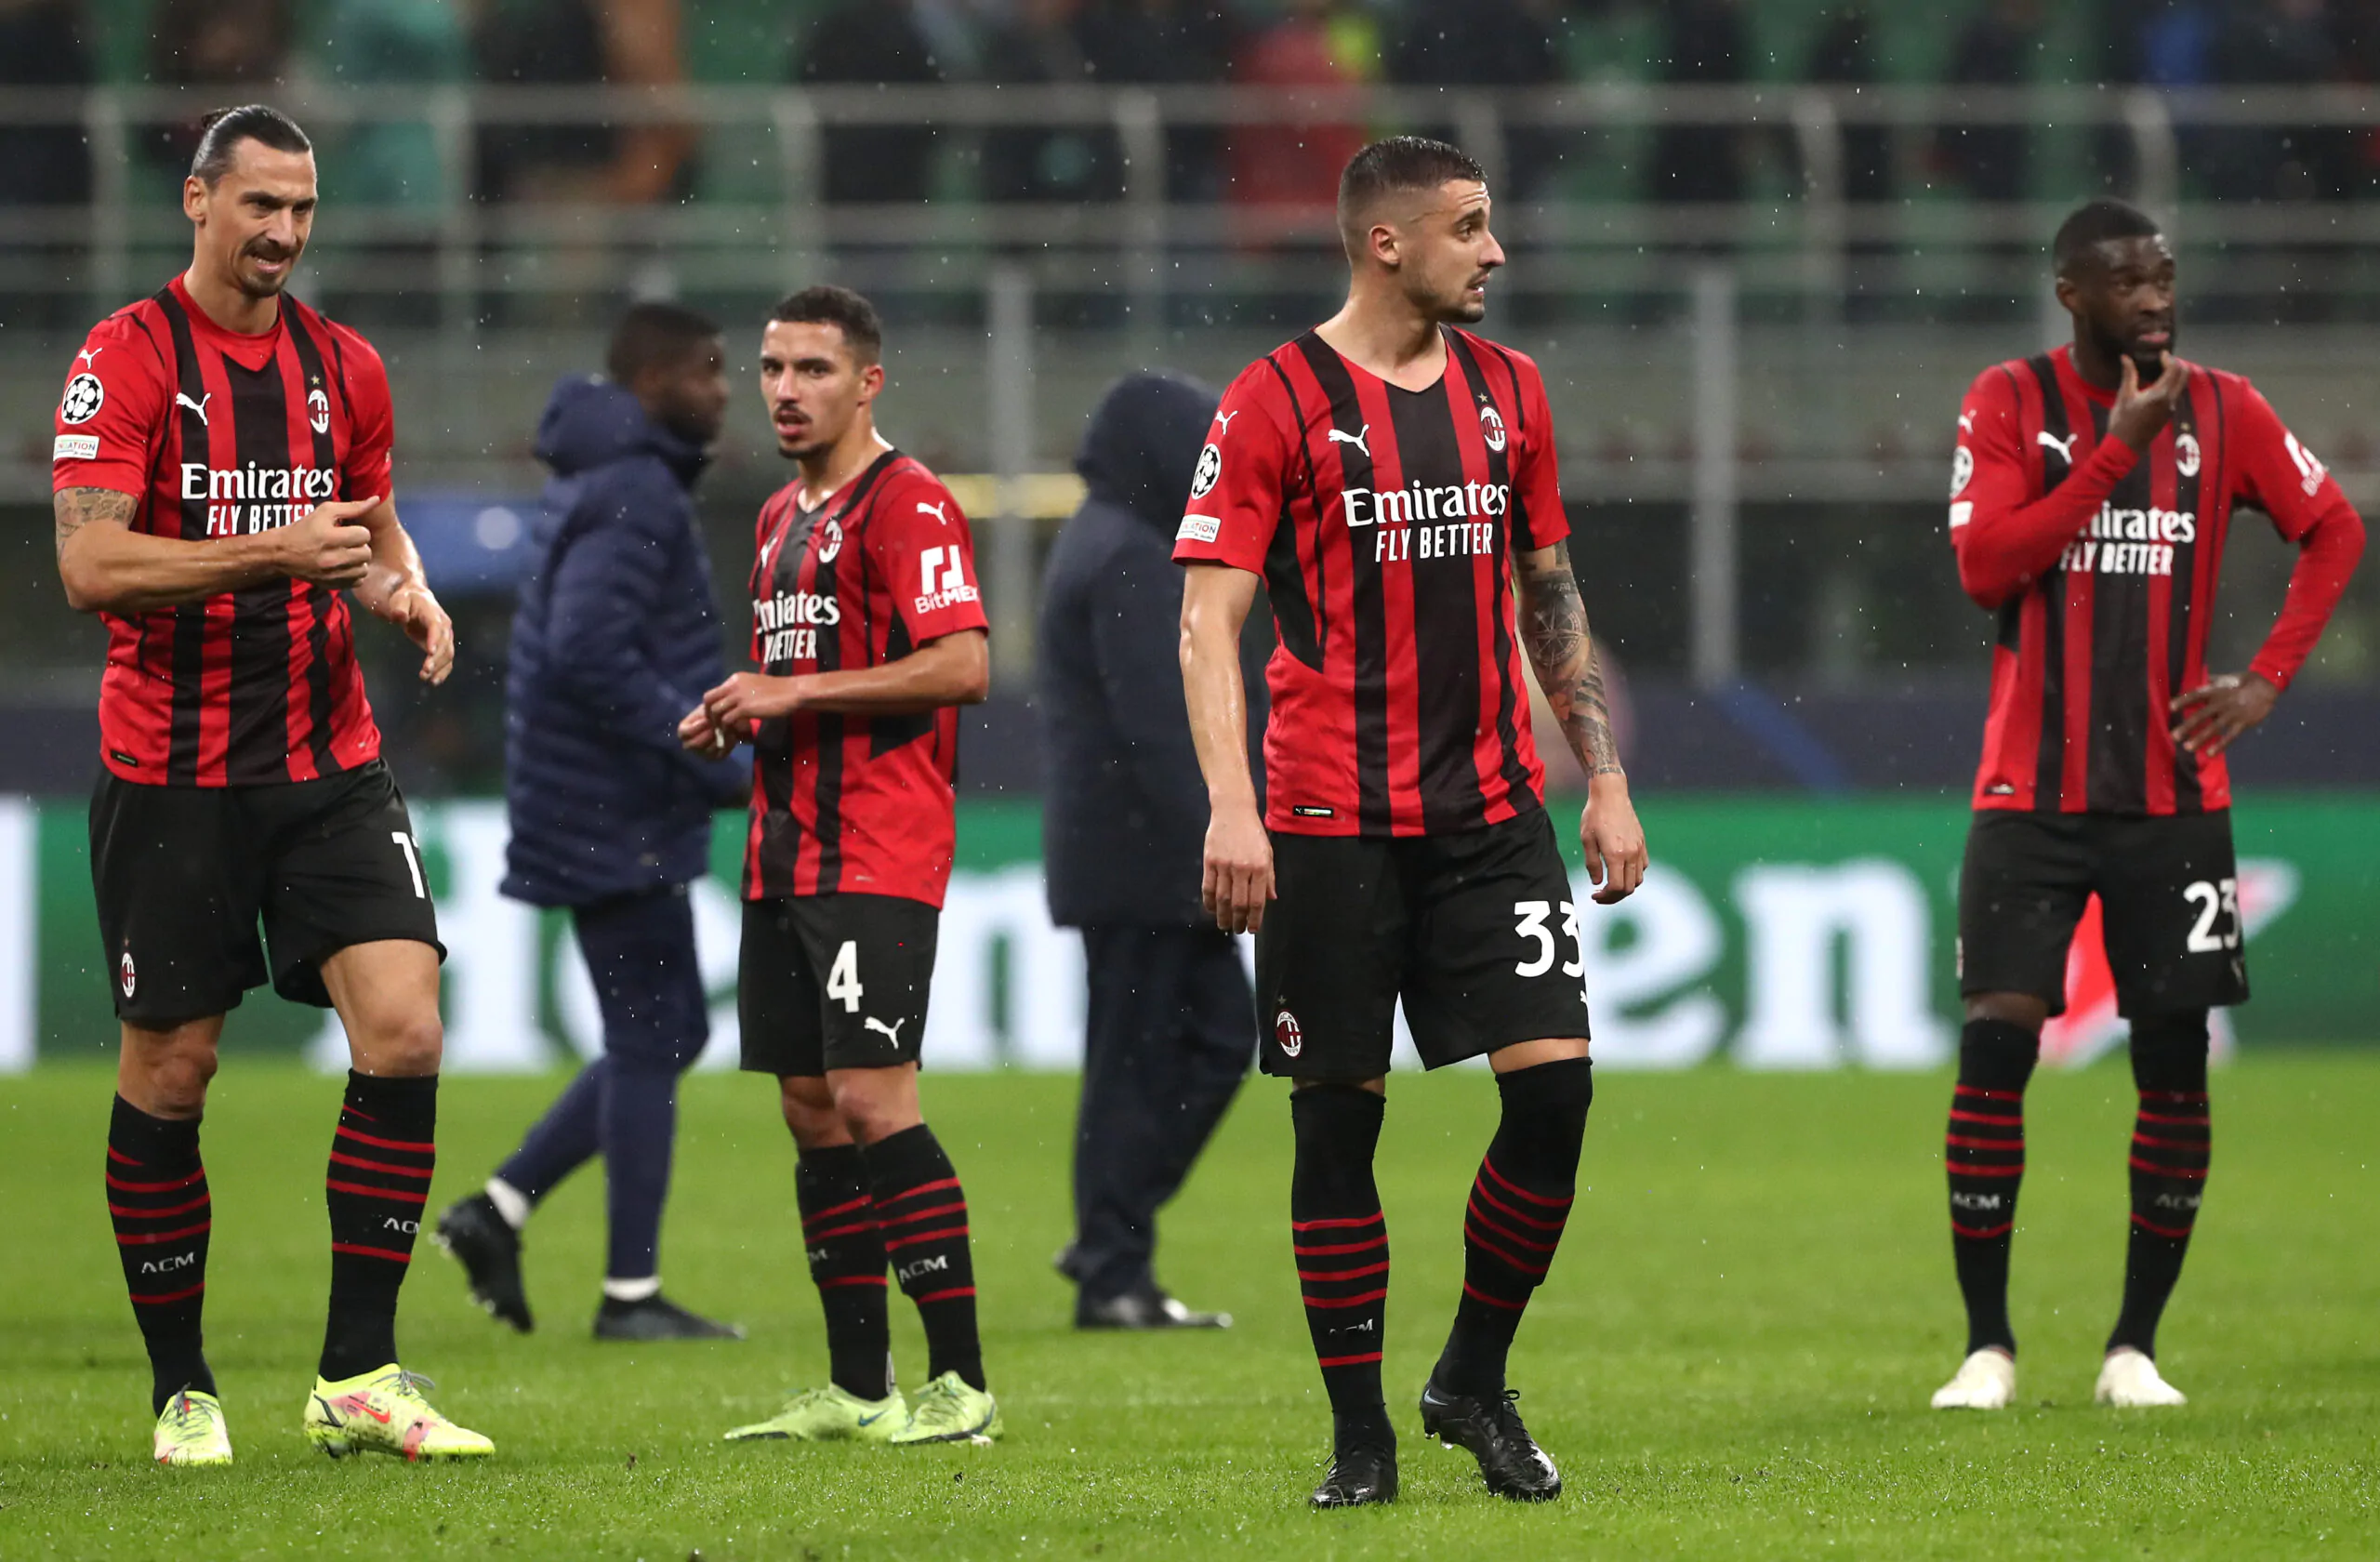 “Il Milan è in grande difficoltà! “: le parole dell’ex giocatore